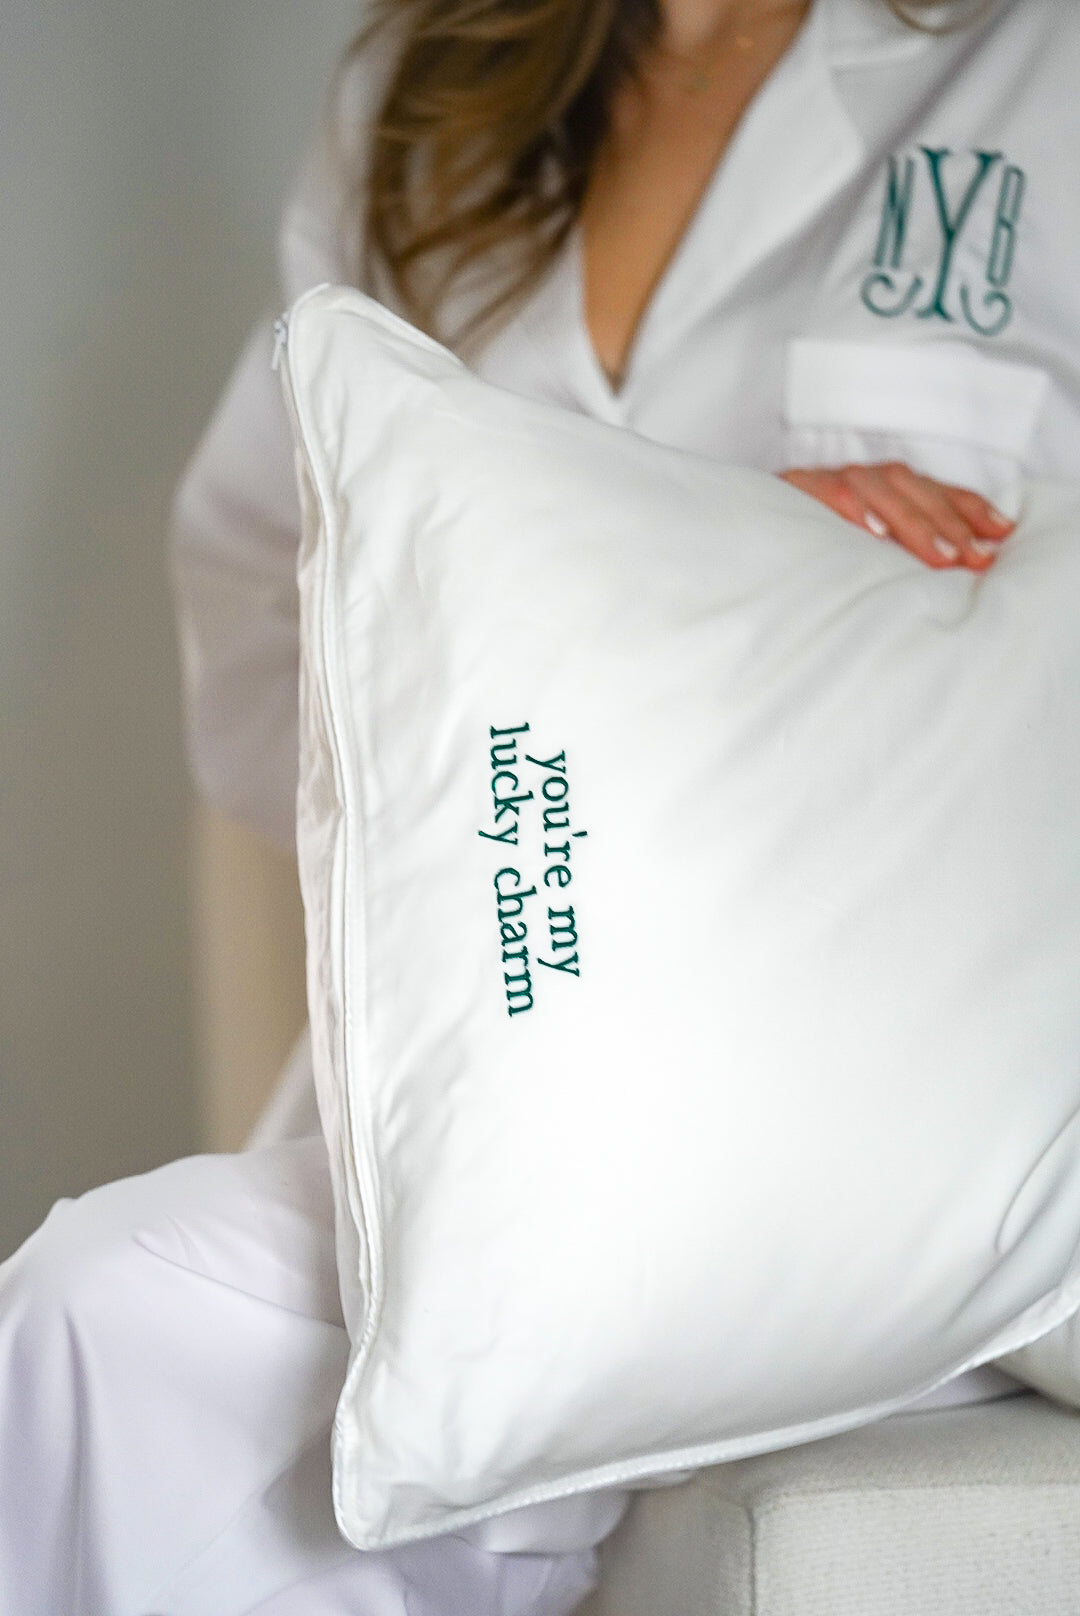 Droplet Lumbar Pillow – The Pillow Bar